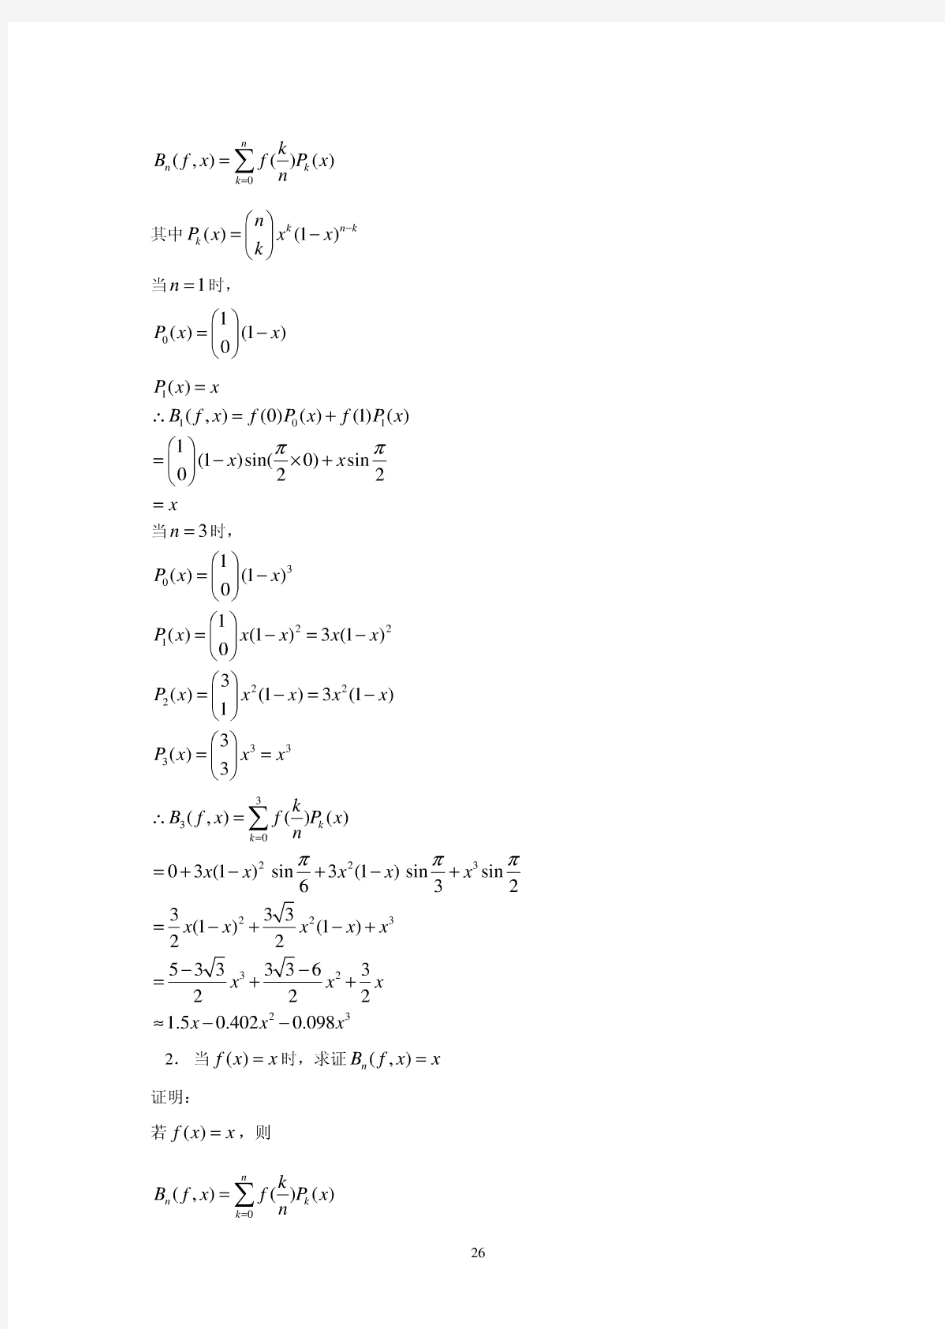 数值分析-习题答案(函数逼近与曲线拟合)